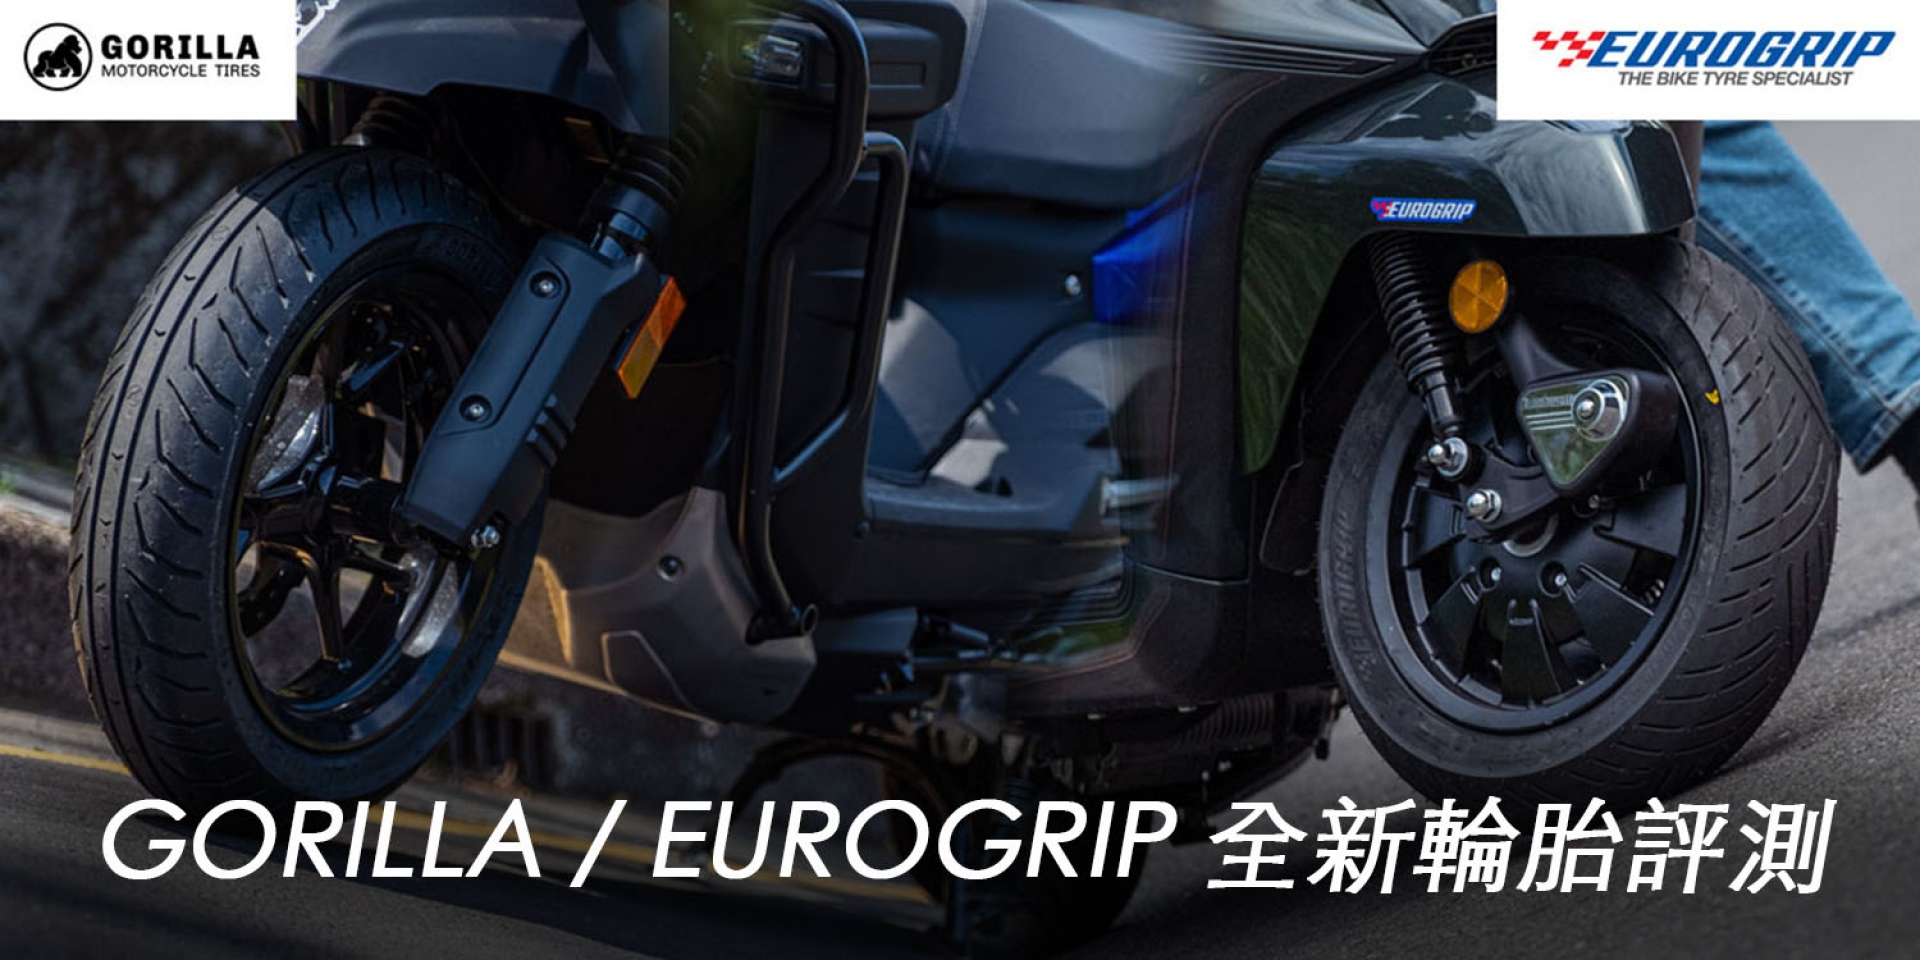 省荷包的新輪胎 好用嗎？好運車業GORILLA / EUROGRIP新胎評測